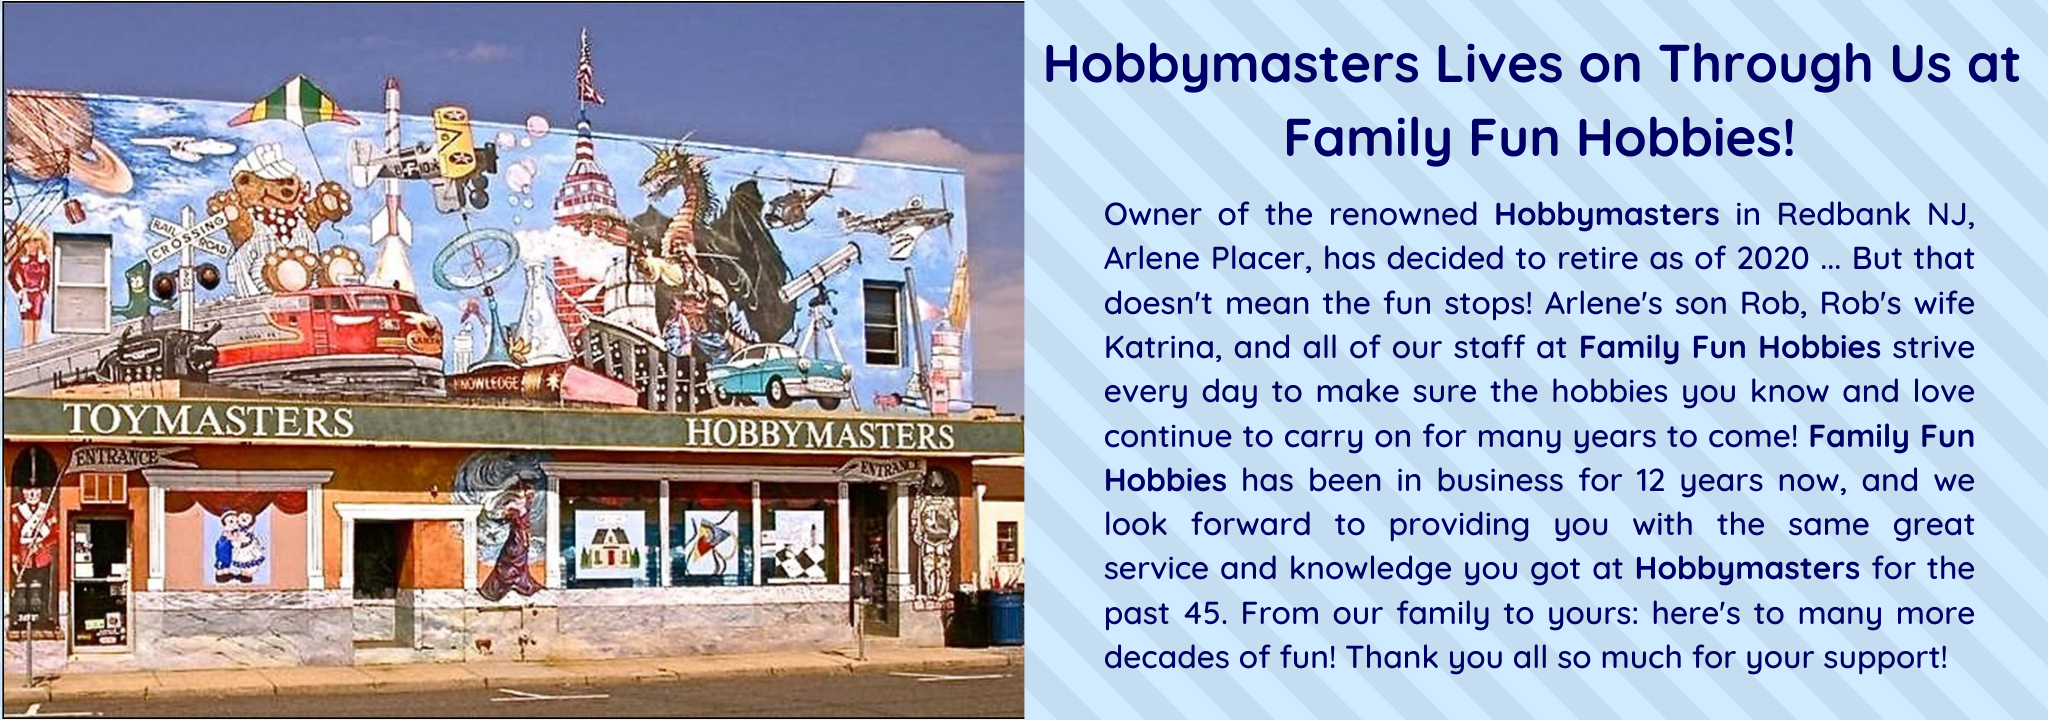 Hobbymasters